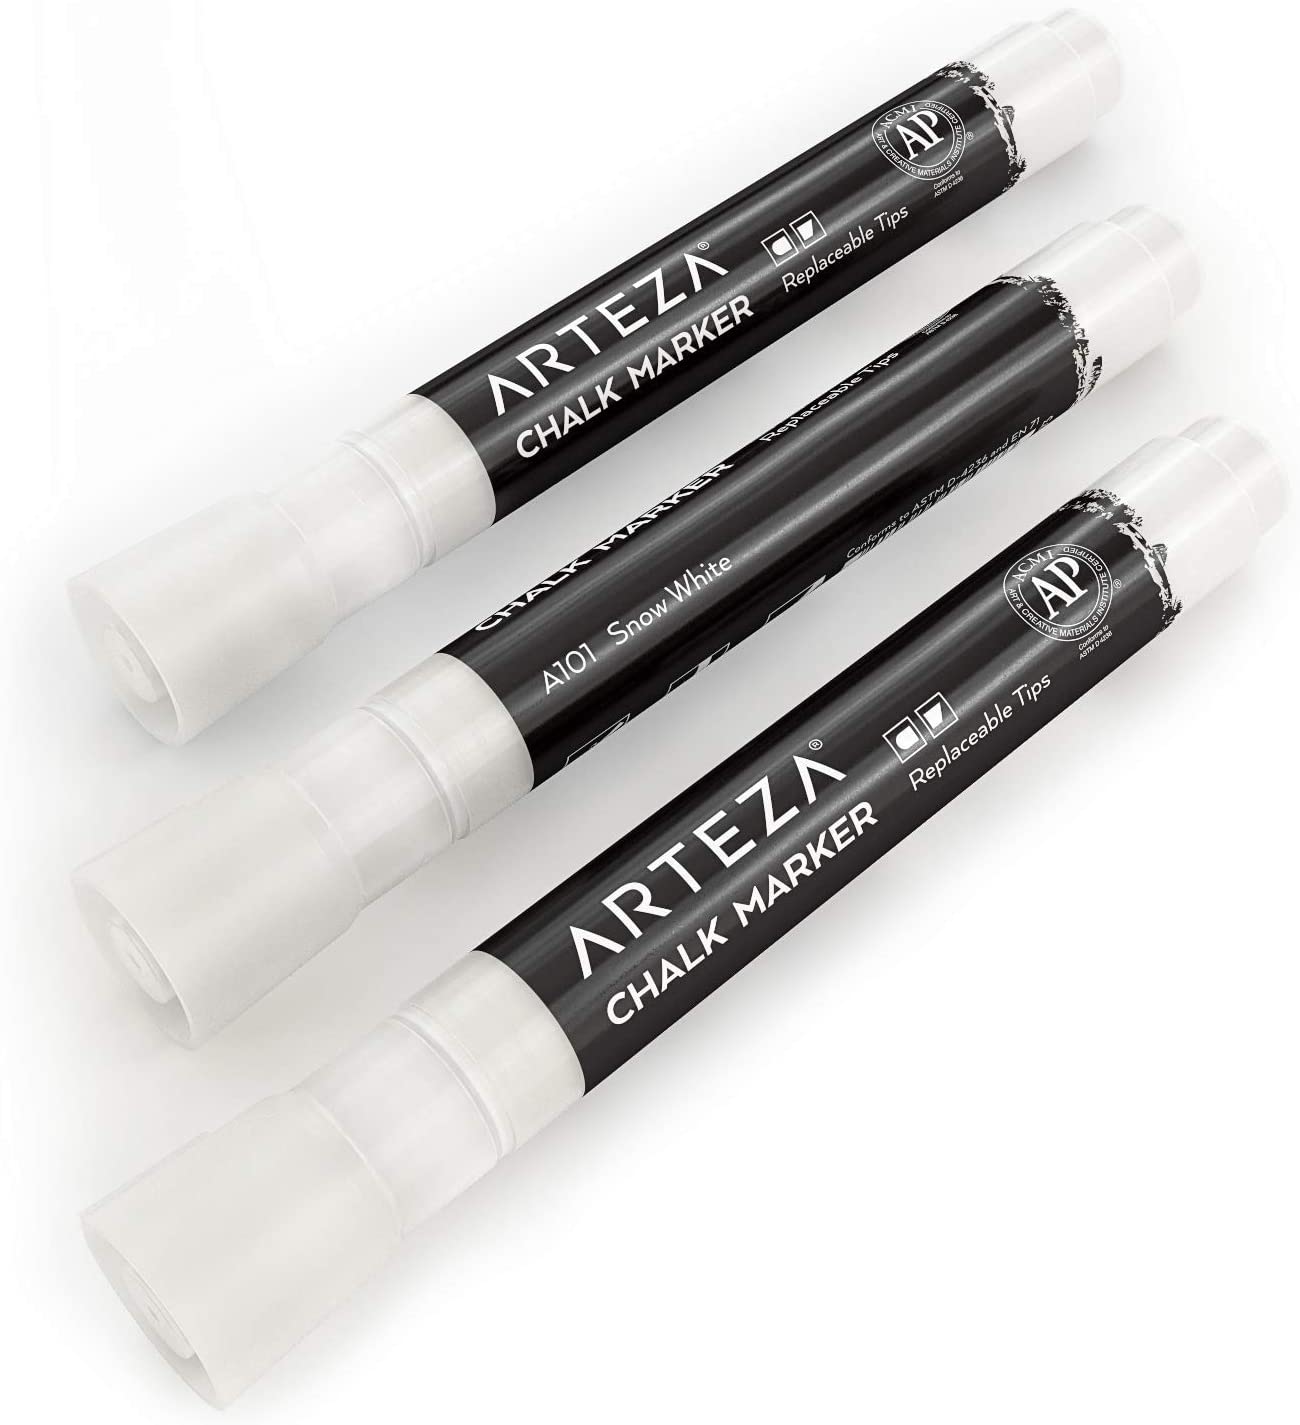 Arteza Liquid Chalk Markers, White - Set of 12